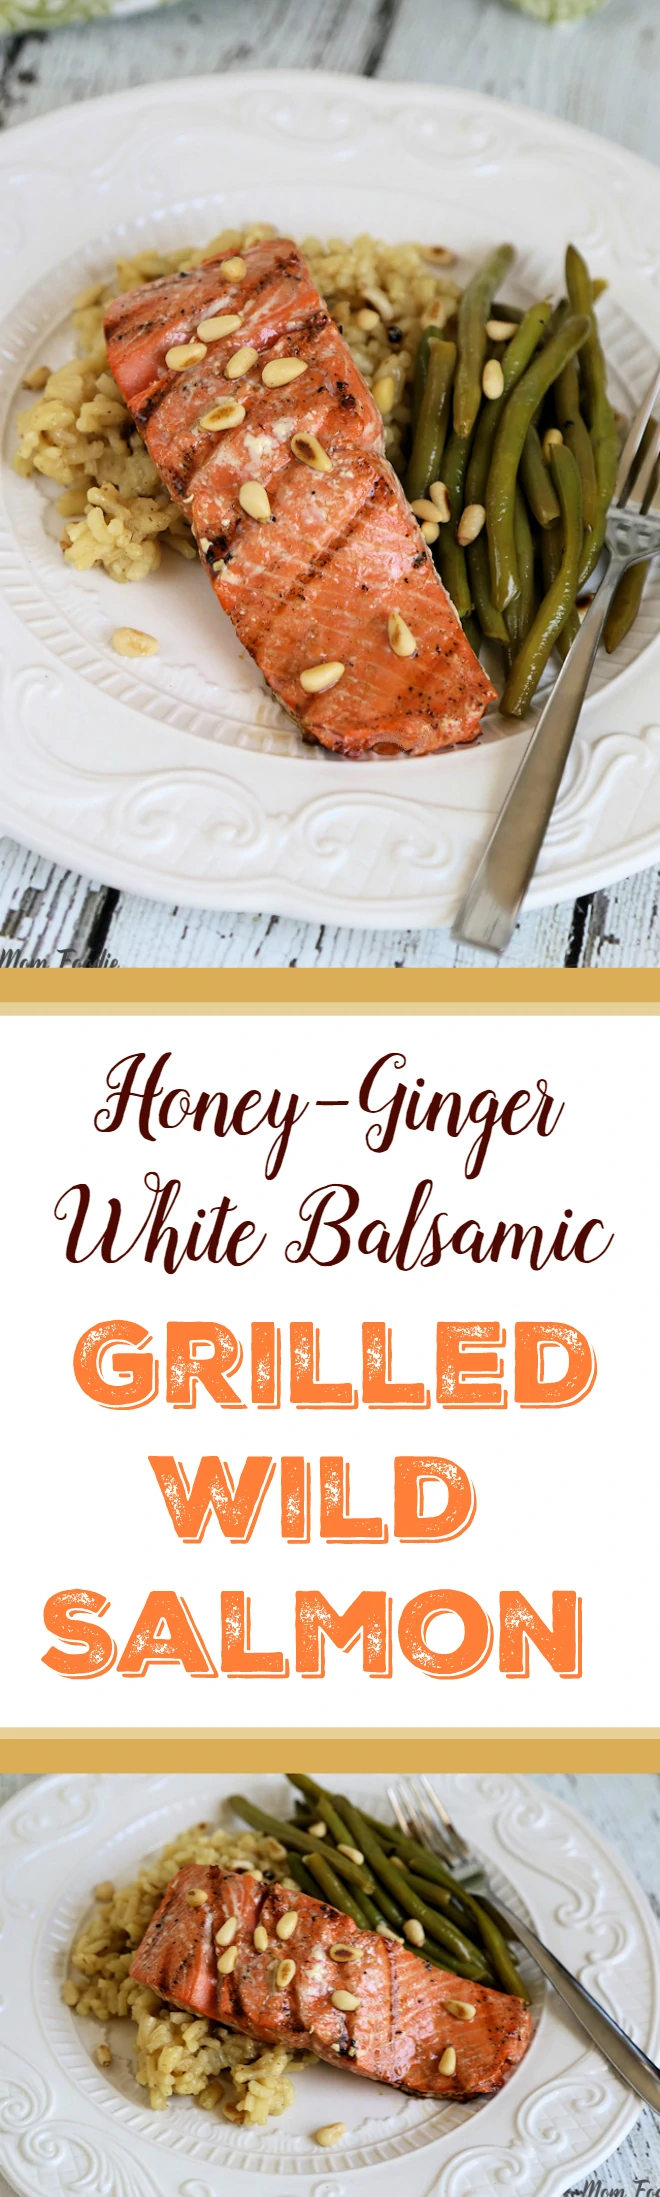 Honey Ginger White Balsamic Grilled Wild Salmon